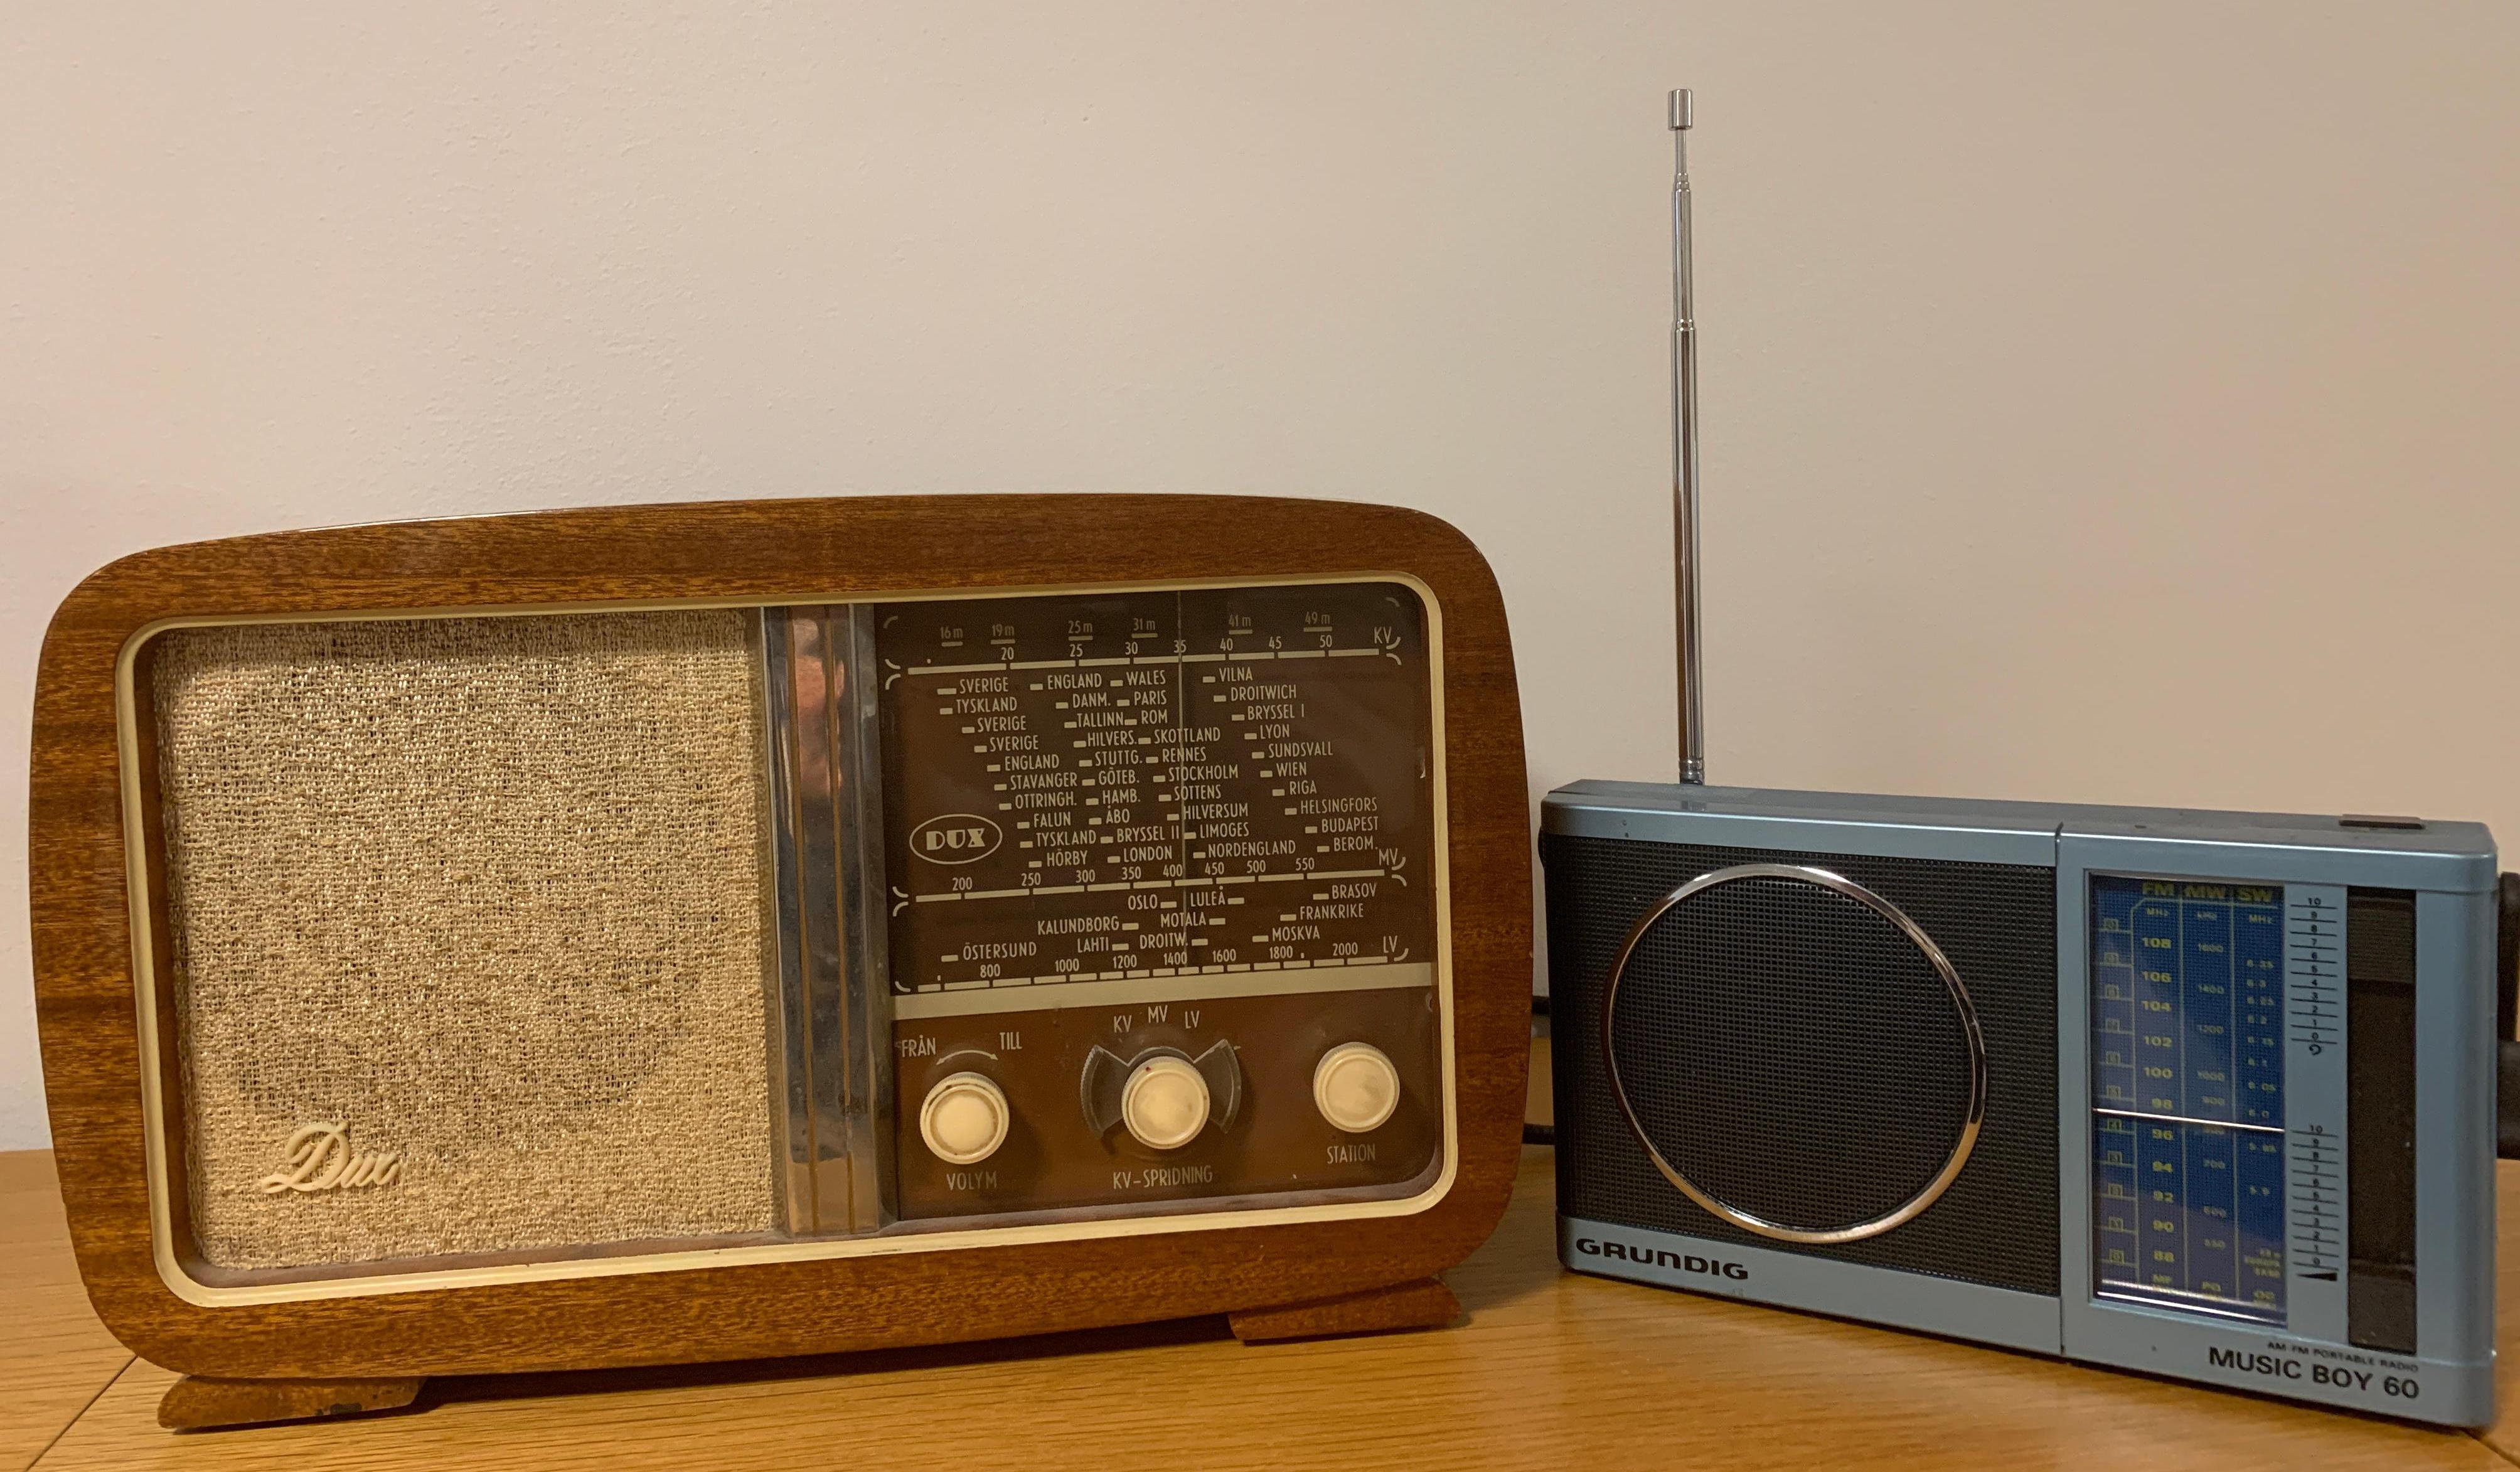 Två äldre radioapparater av märkena Dux och Grundig som ingår i KB:s samlingar. Bild: KB